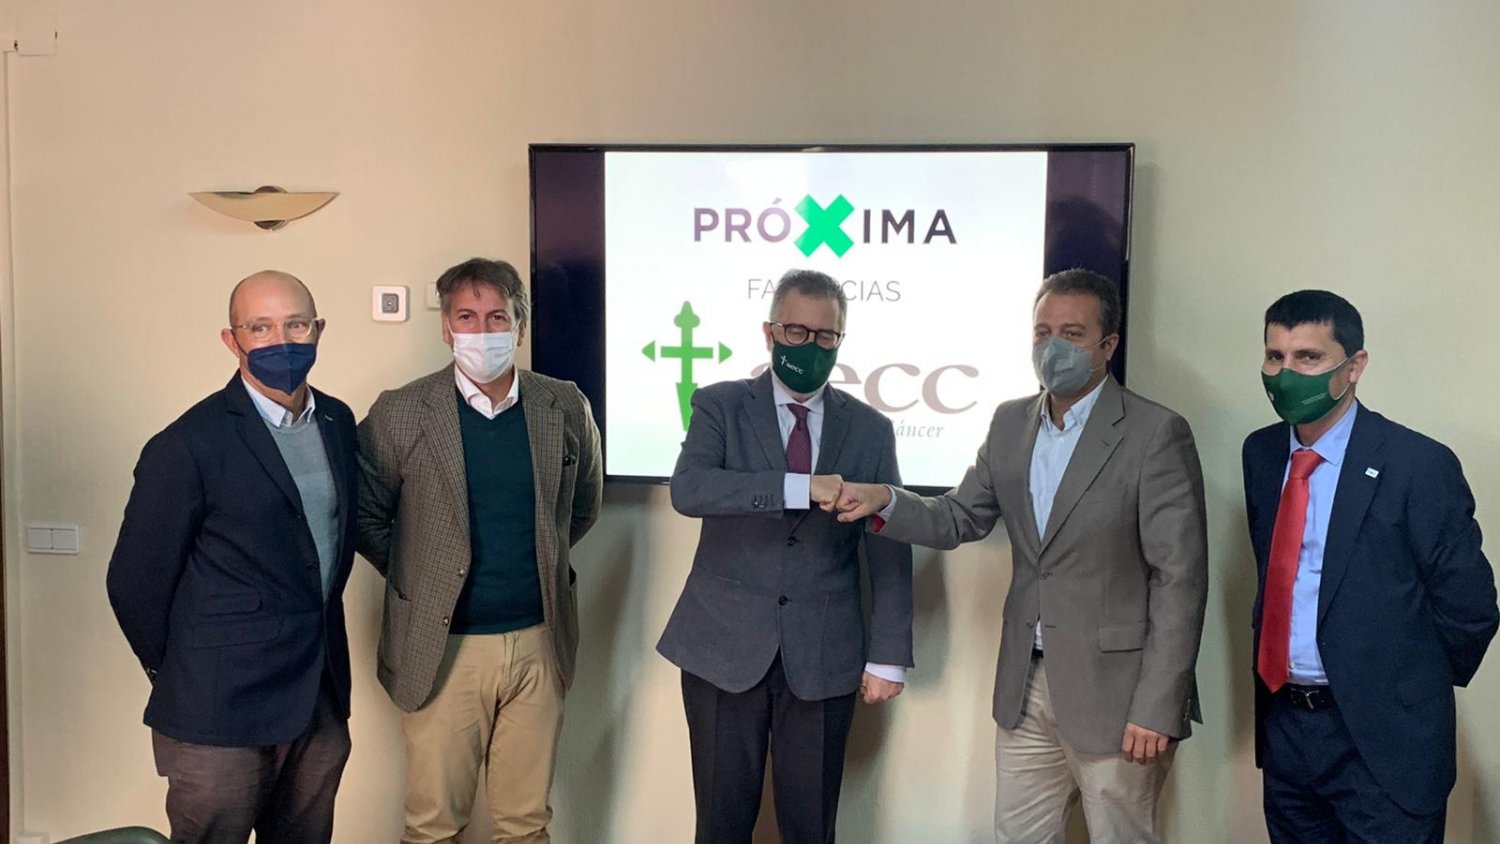 AECC Málaga y Próxima Farmacias firman un acuerdo de colaboración para la prevención del cáncer